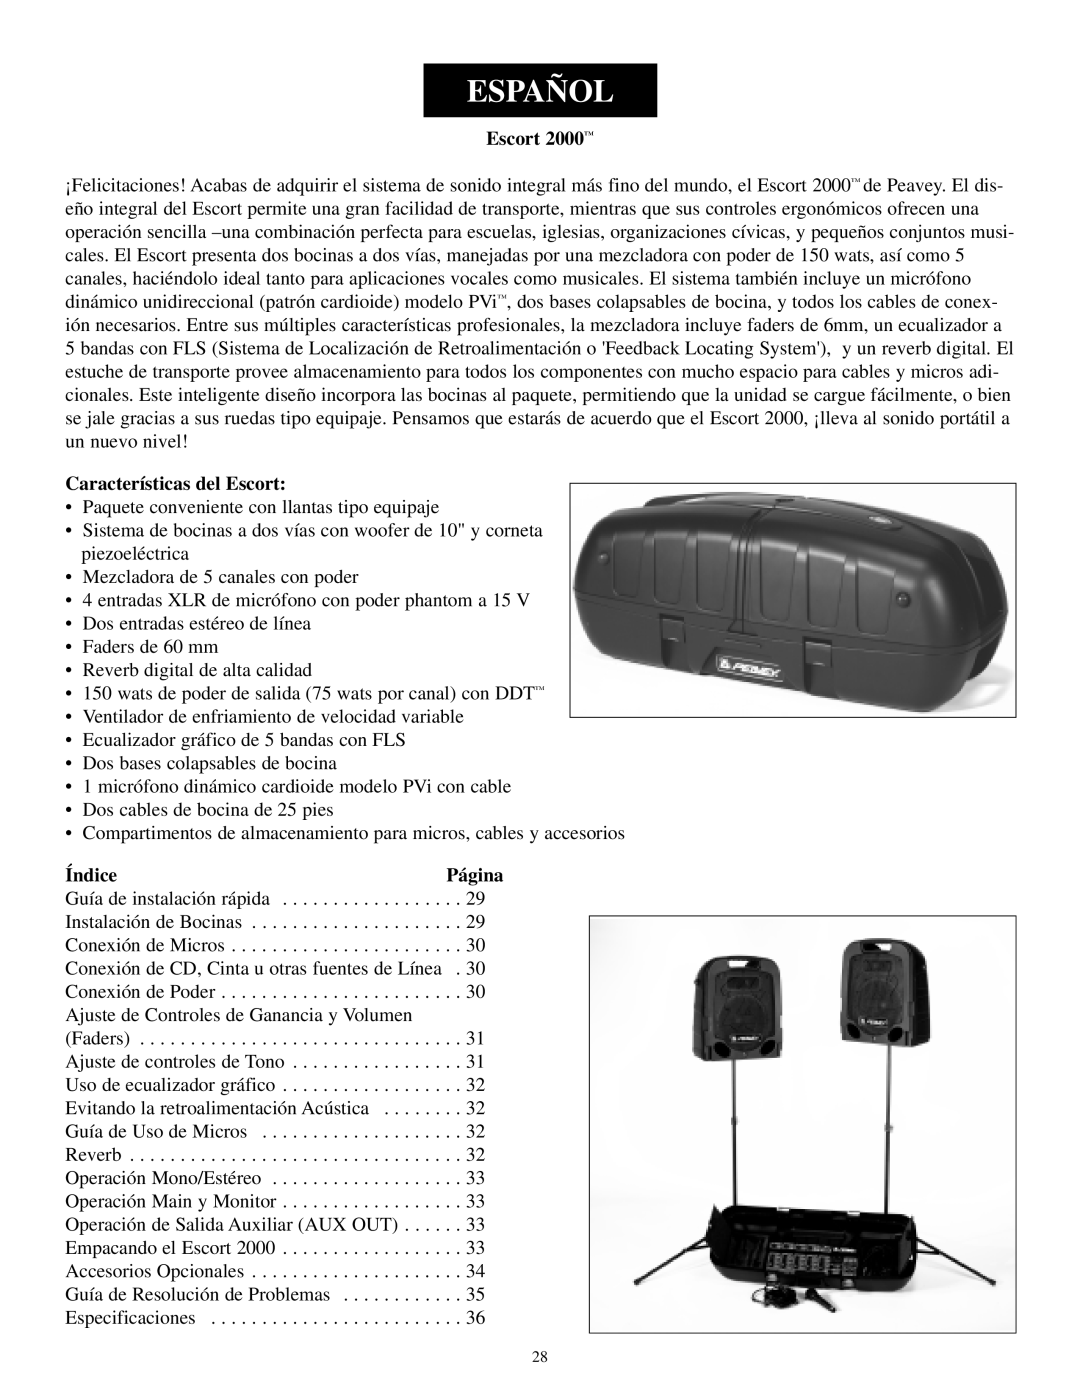 Musica 2000 manual Español, Características del Escort, Índice, Página 